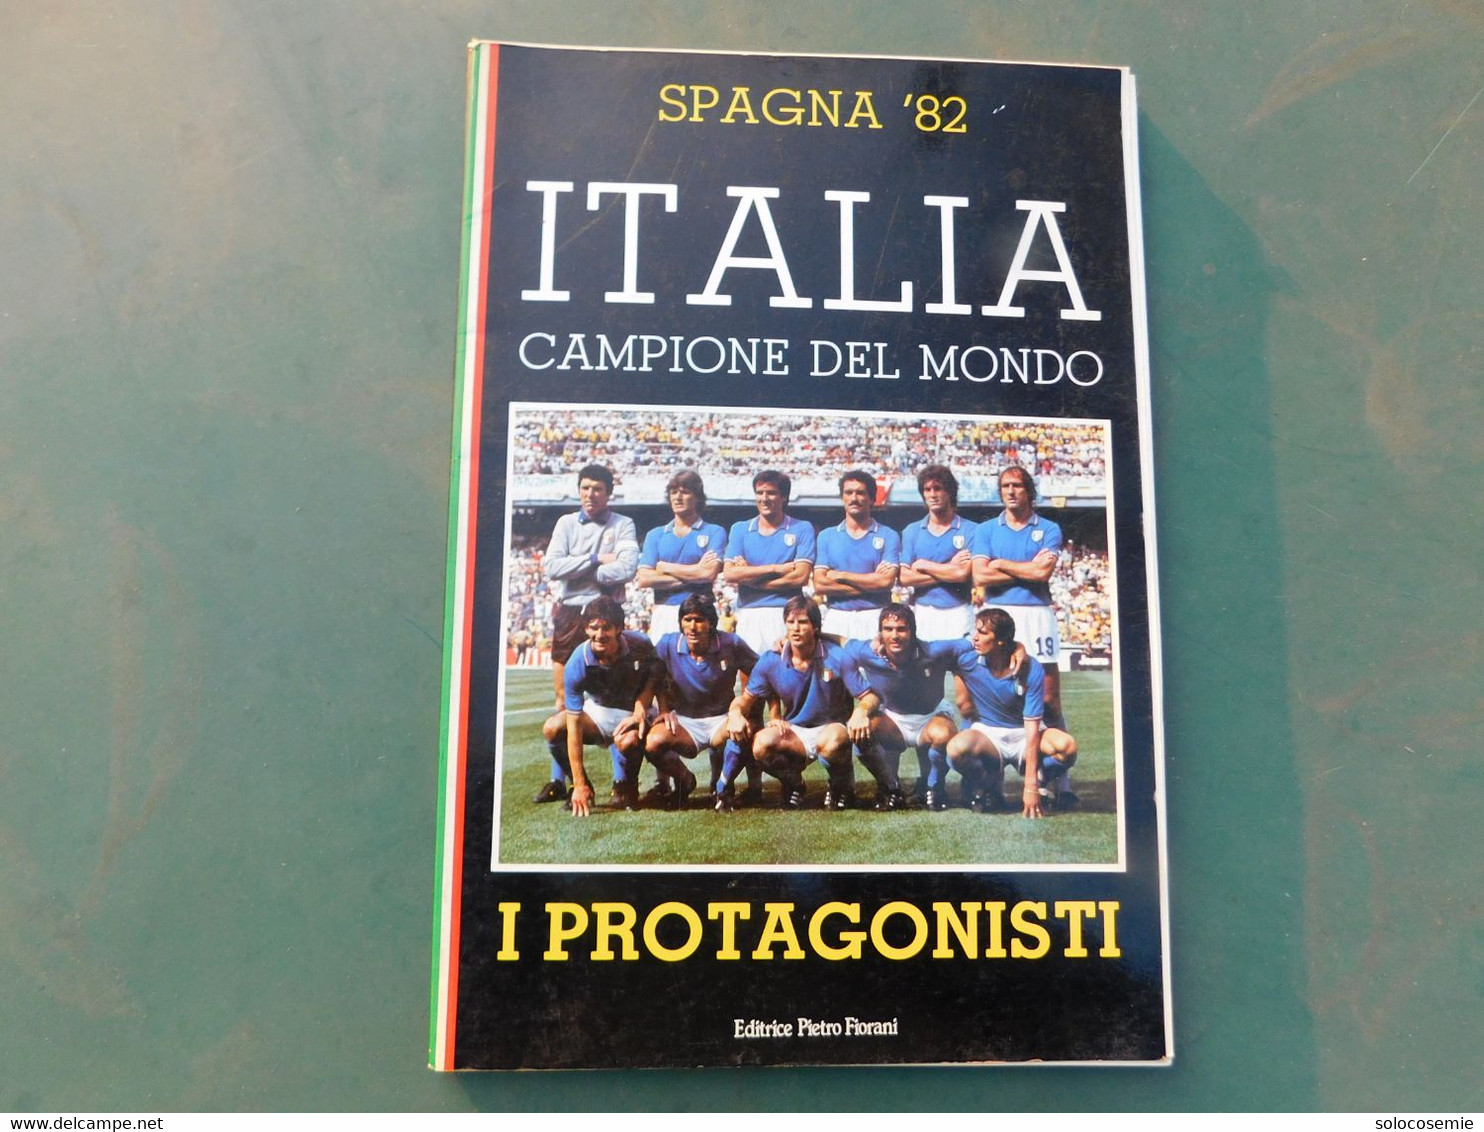 Spagna '82 - ITALIA CAMPIONE DEL MONDO  -I Protagonisti, Editrice Fiorani - A Identifier